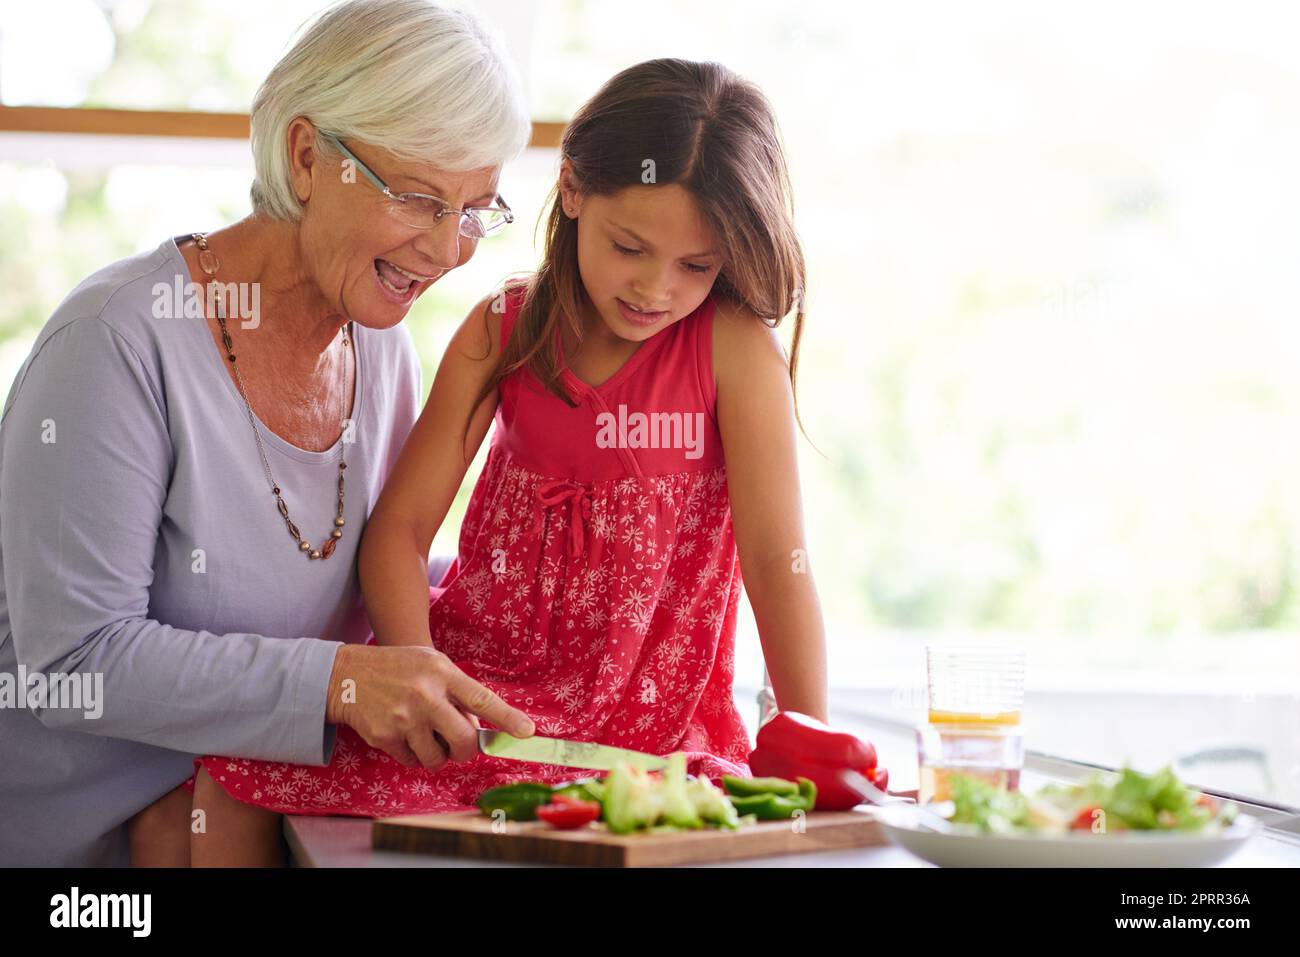 Sie liebt es, der Oma zu helfen. Ein kleines Mädchen hilft ihrer Großmutter beim Mittagessen. Stockfoto